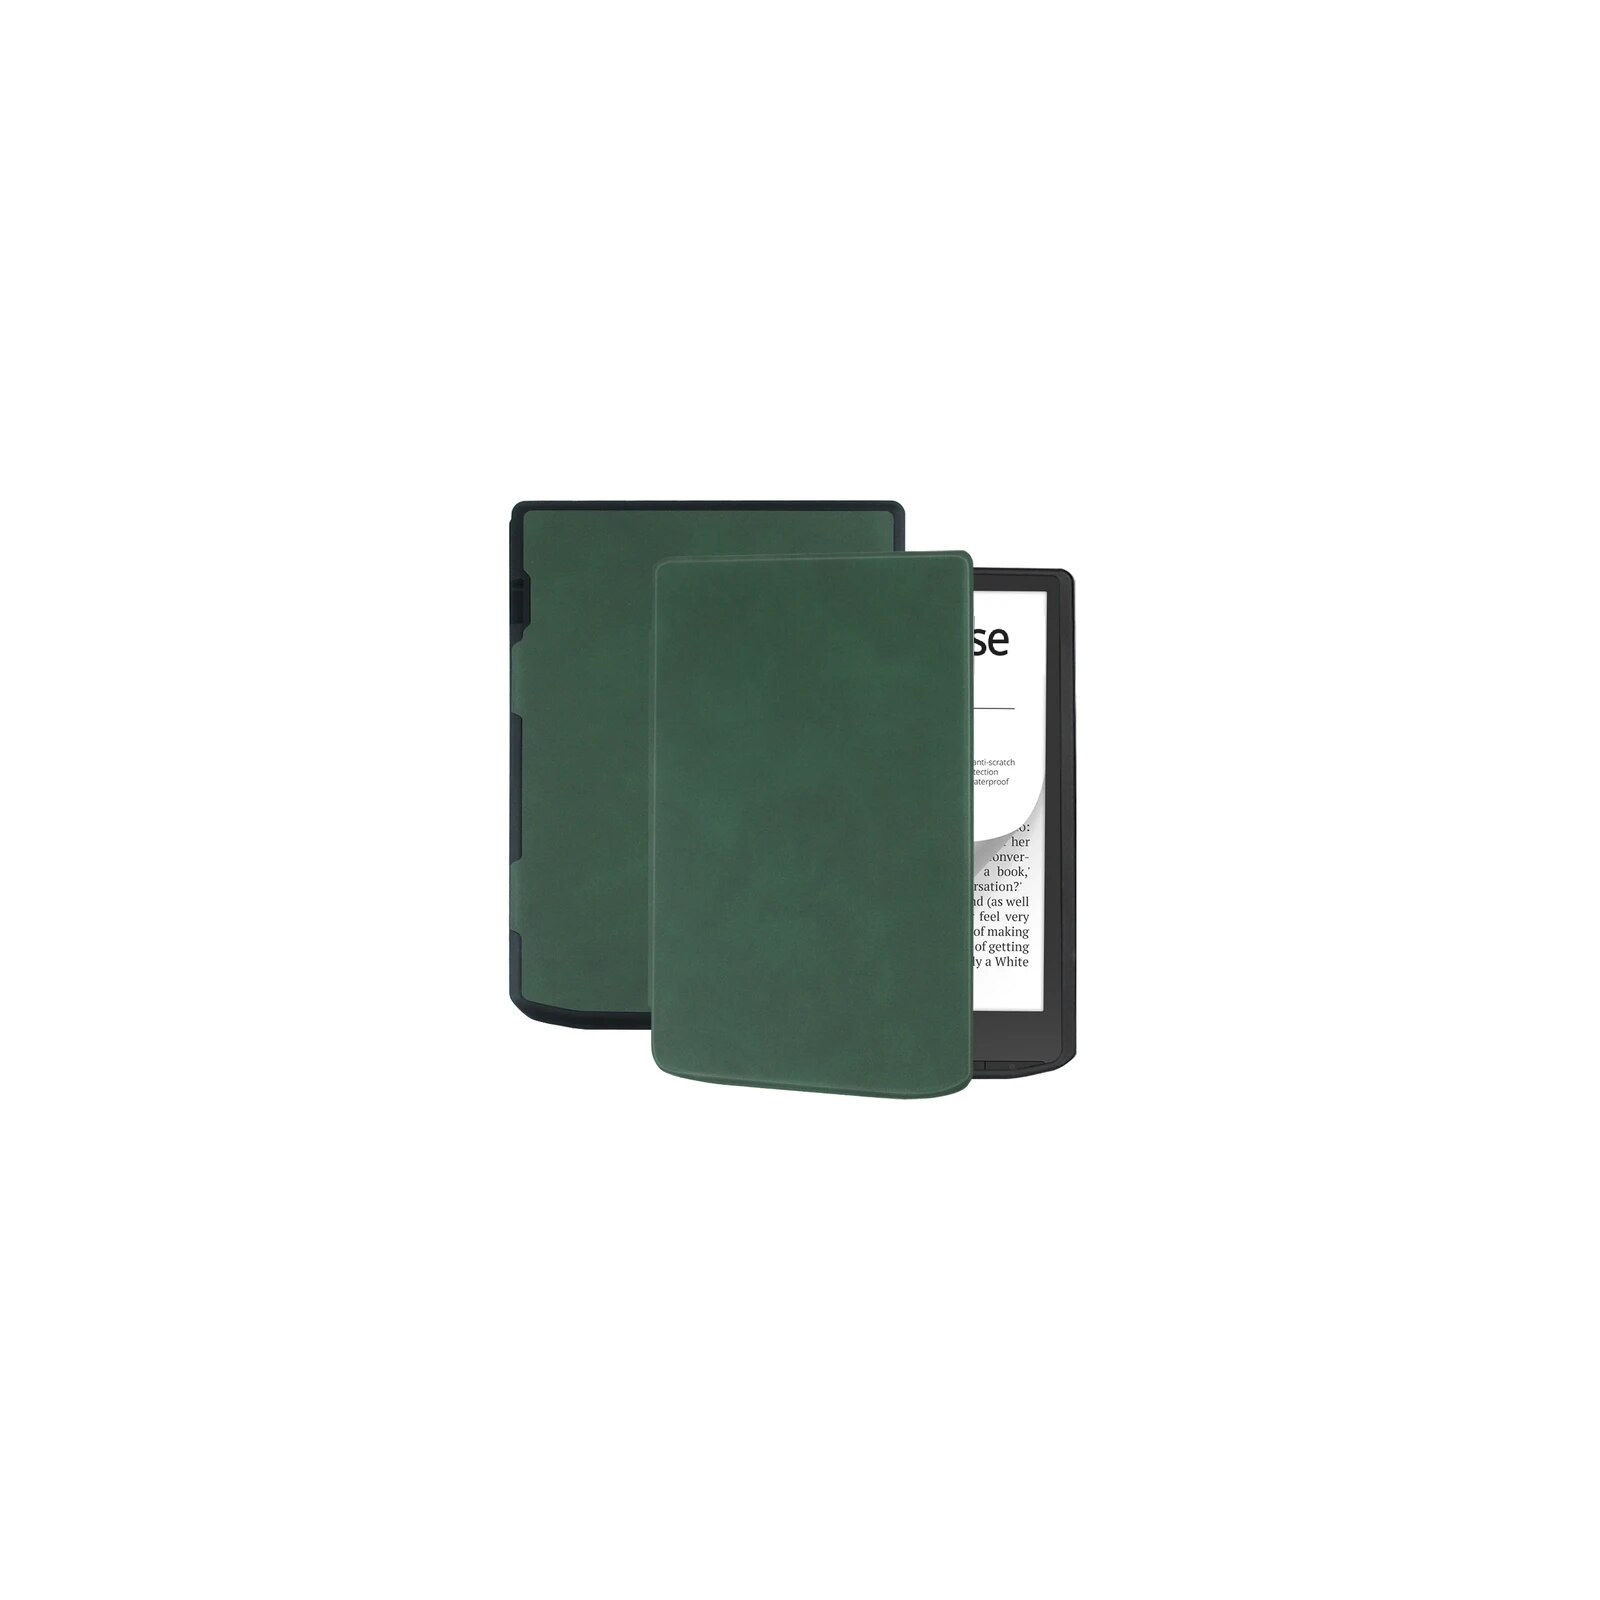 Чехол для электронной книги BeCover Smart Case PocketBook 629 Verse / 634 Verse Pro 6" Brown (710451) изображение 2